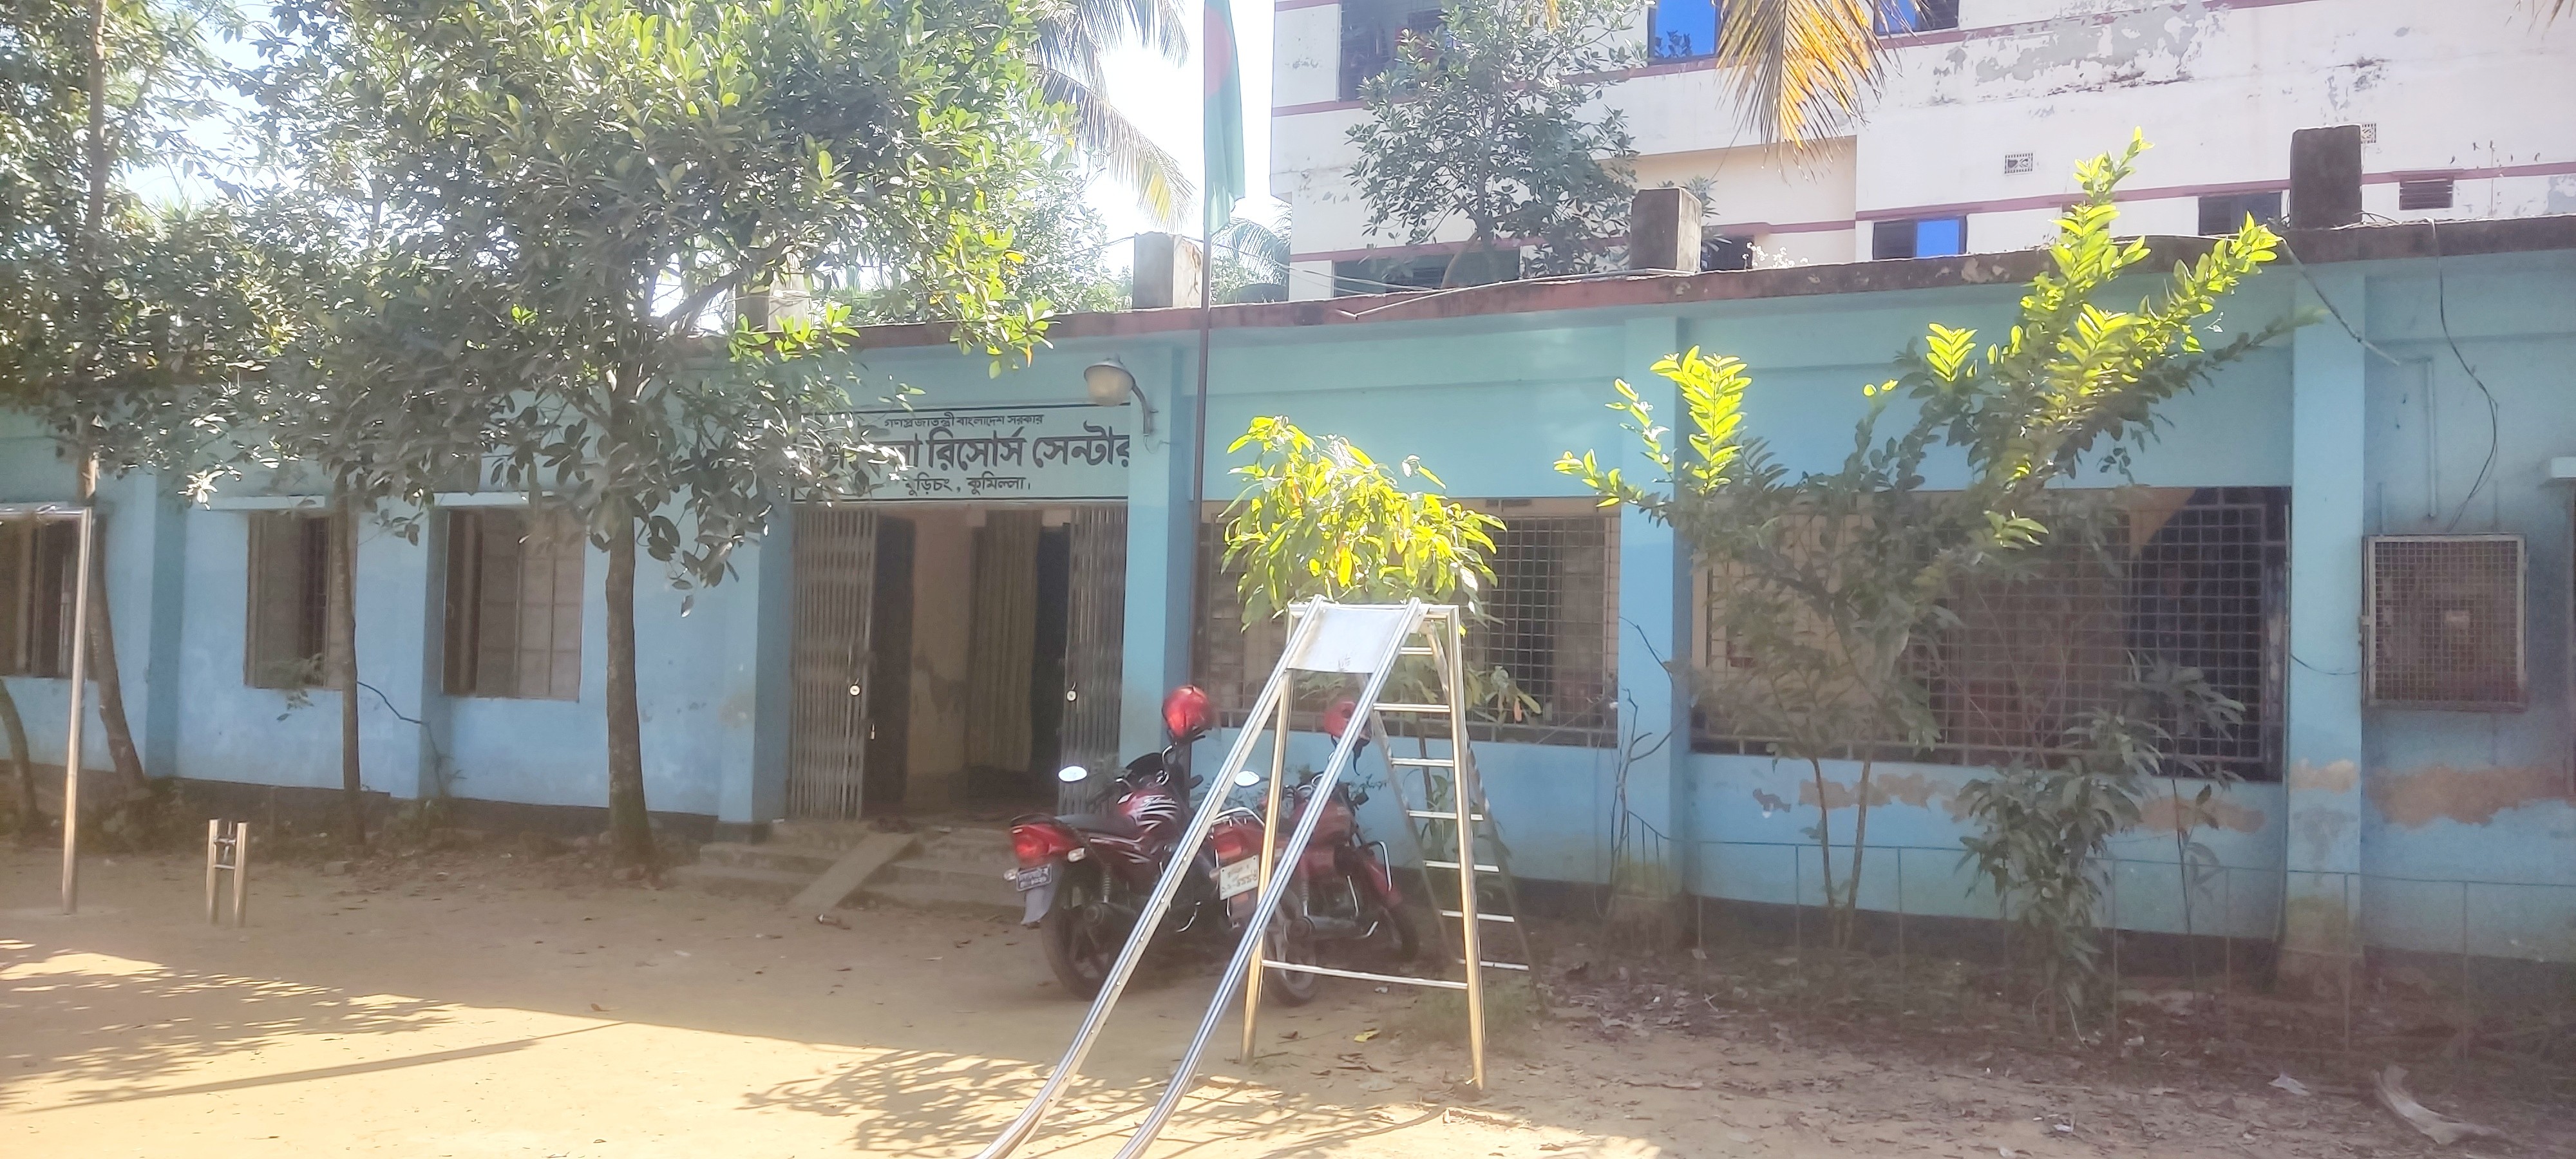 উপজেলা রিসোর্স সেন্টার, বুড়িচং, কুমিল্লা